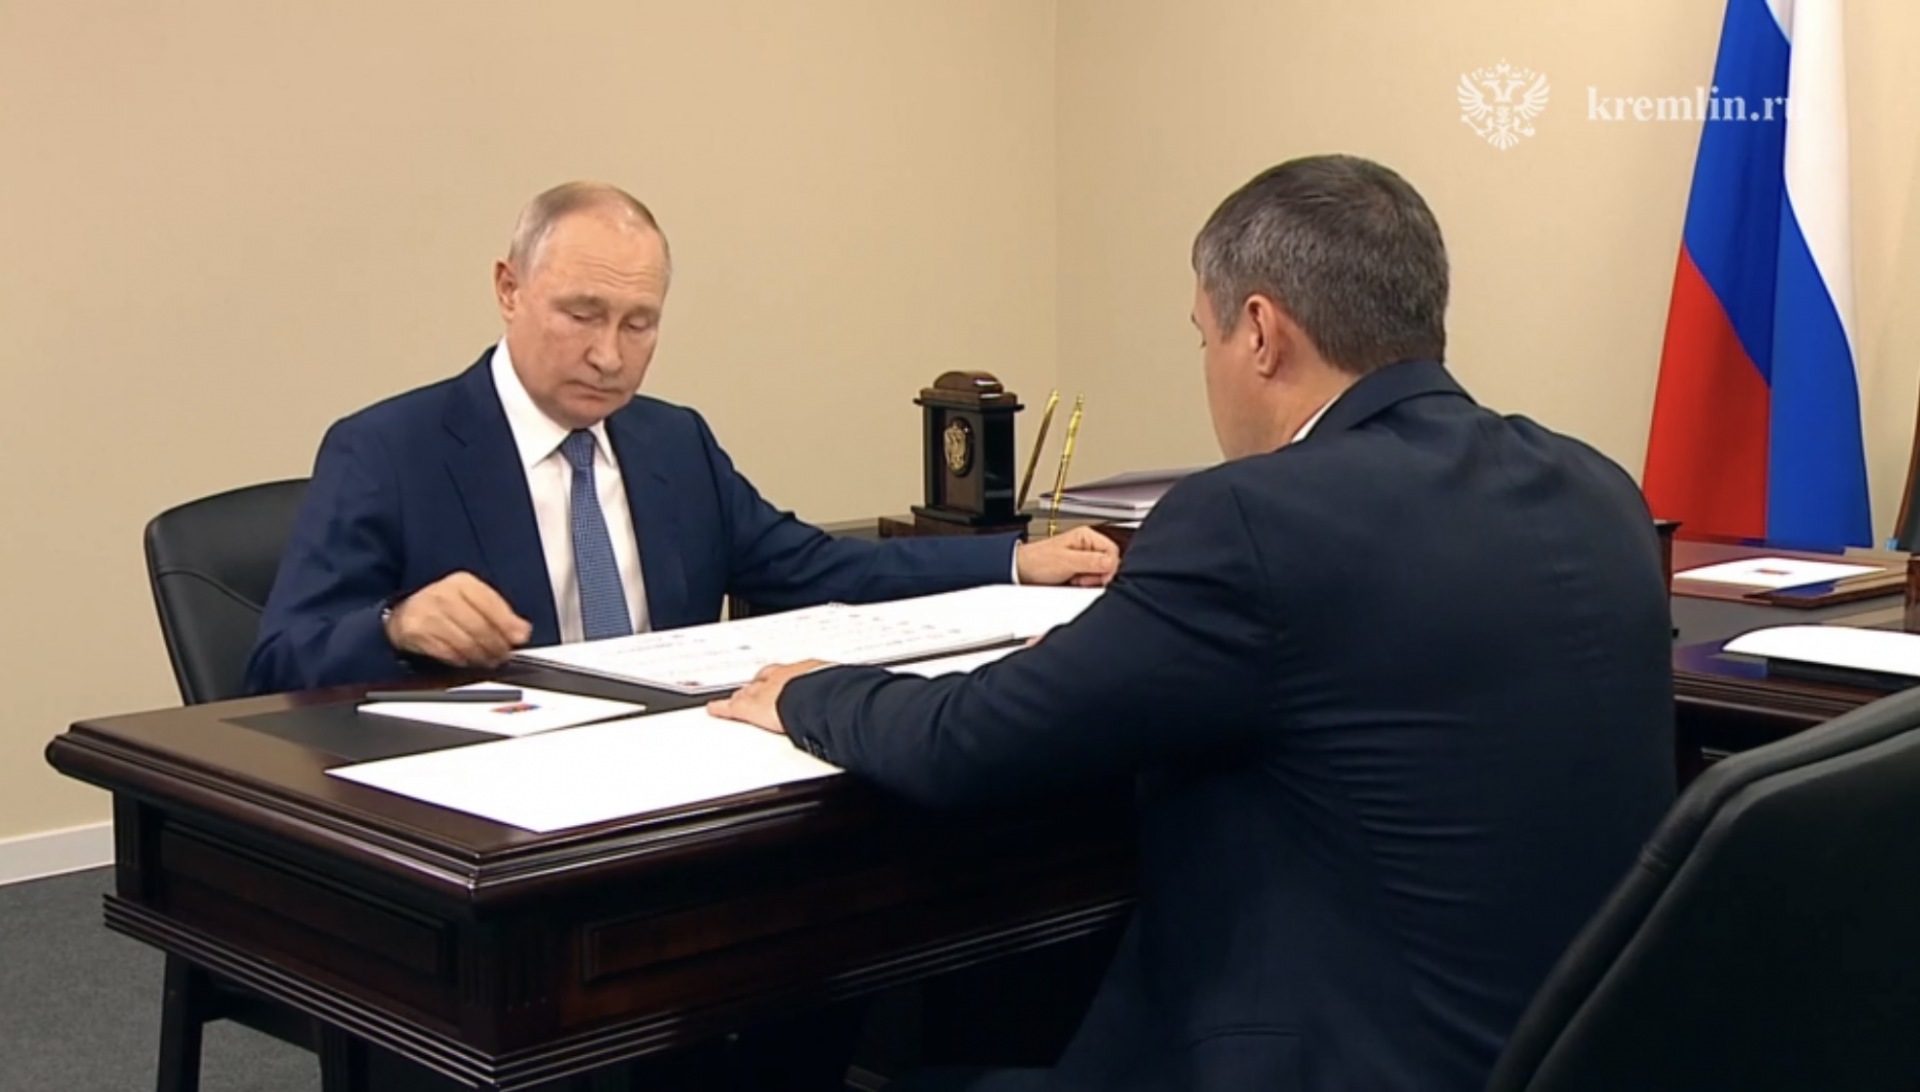 Владимир Путин отметил высокие темпы роста экономики Пермского края 